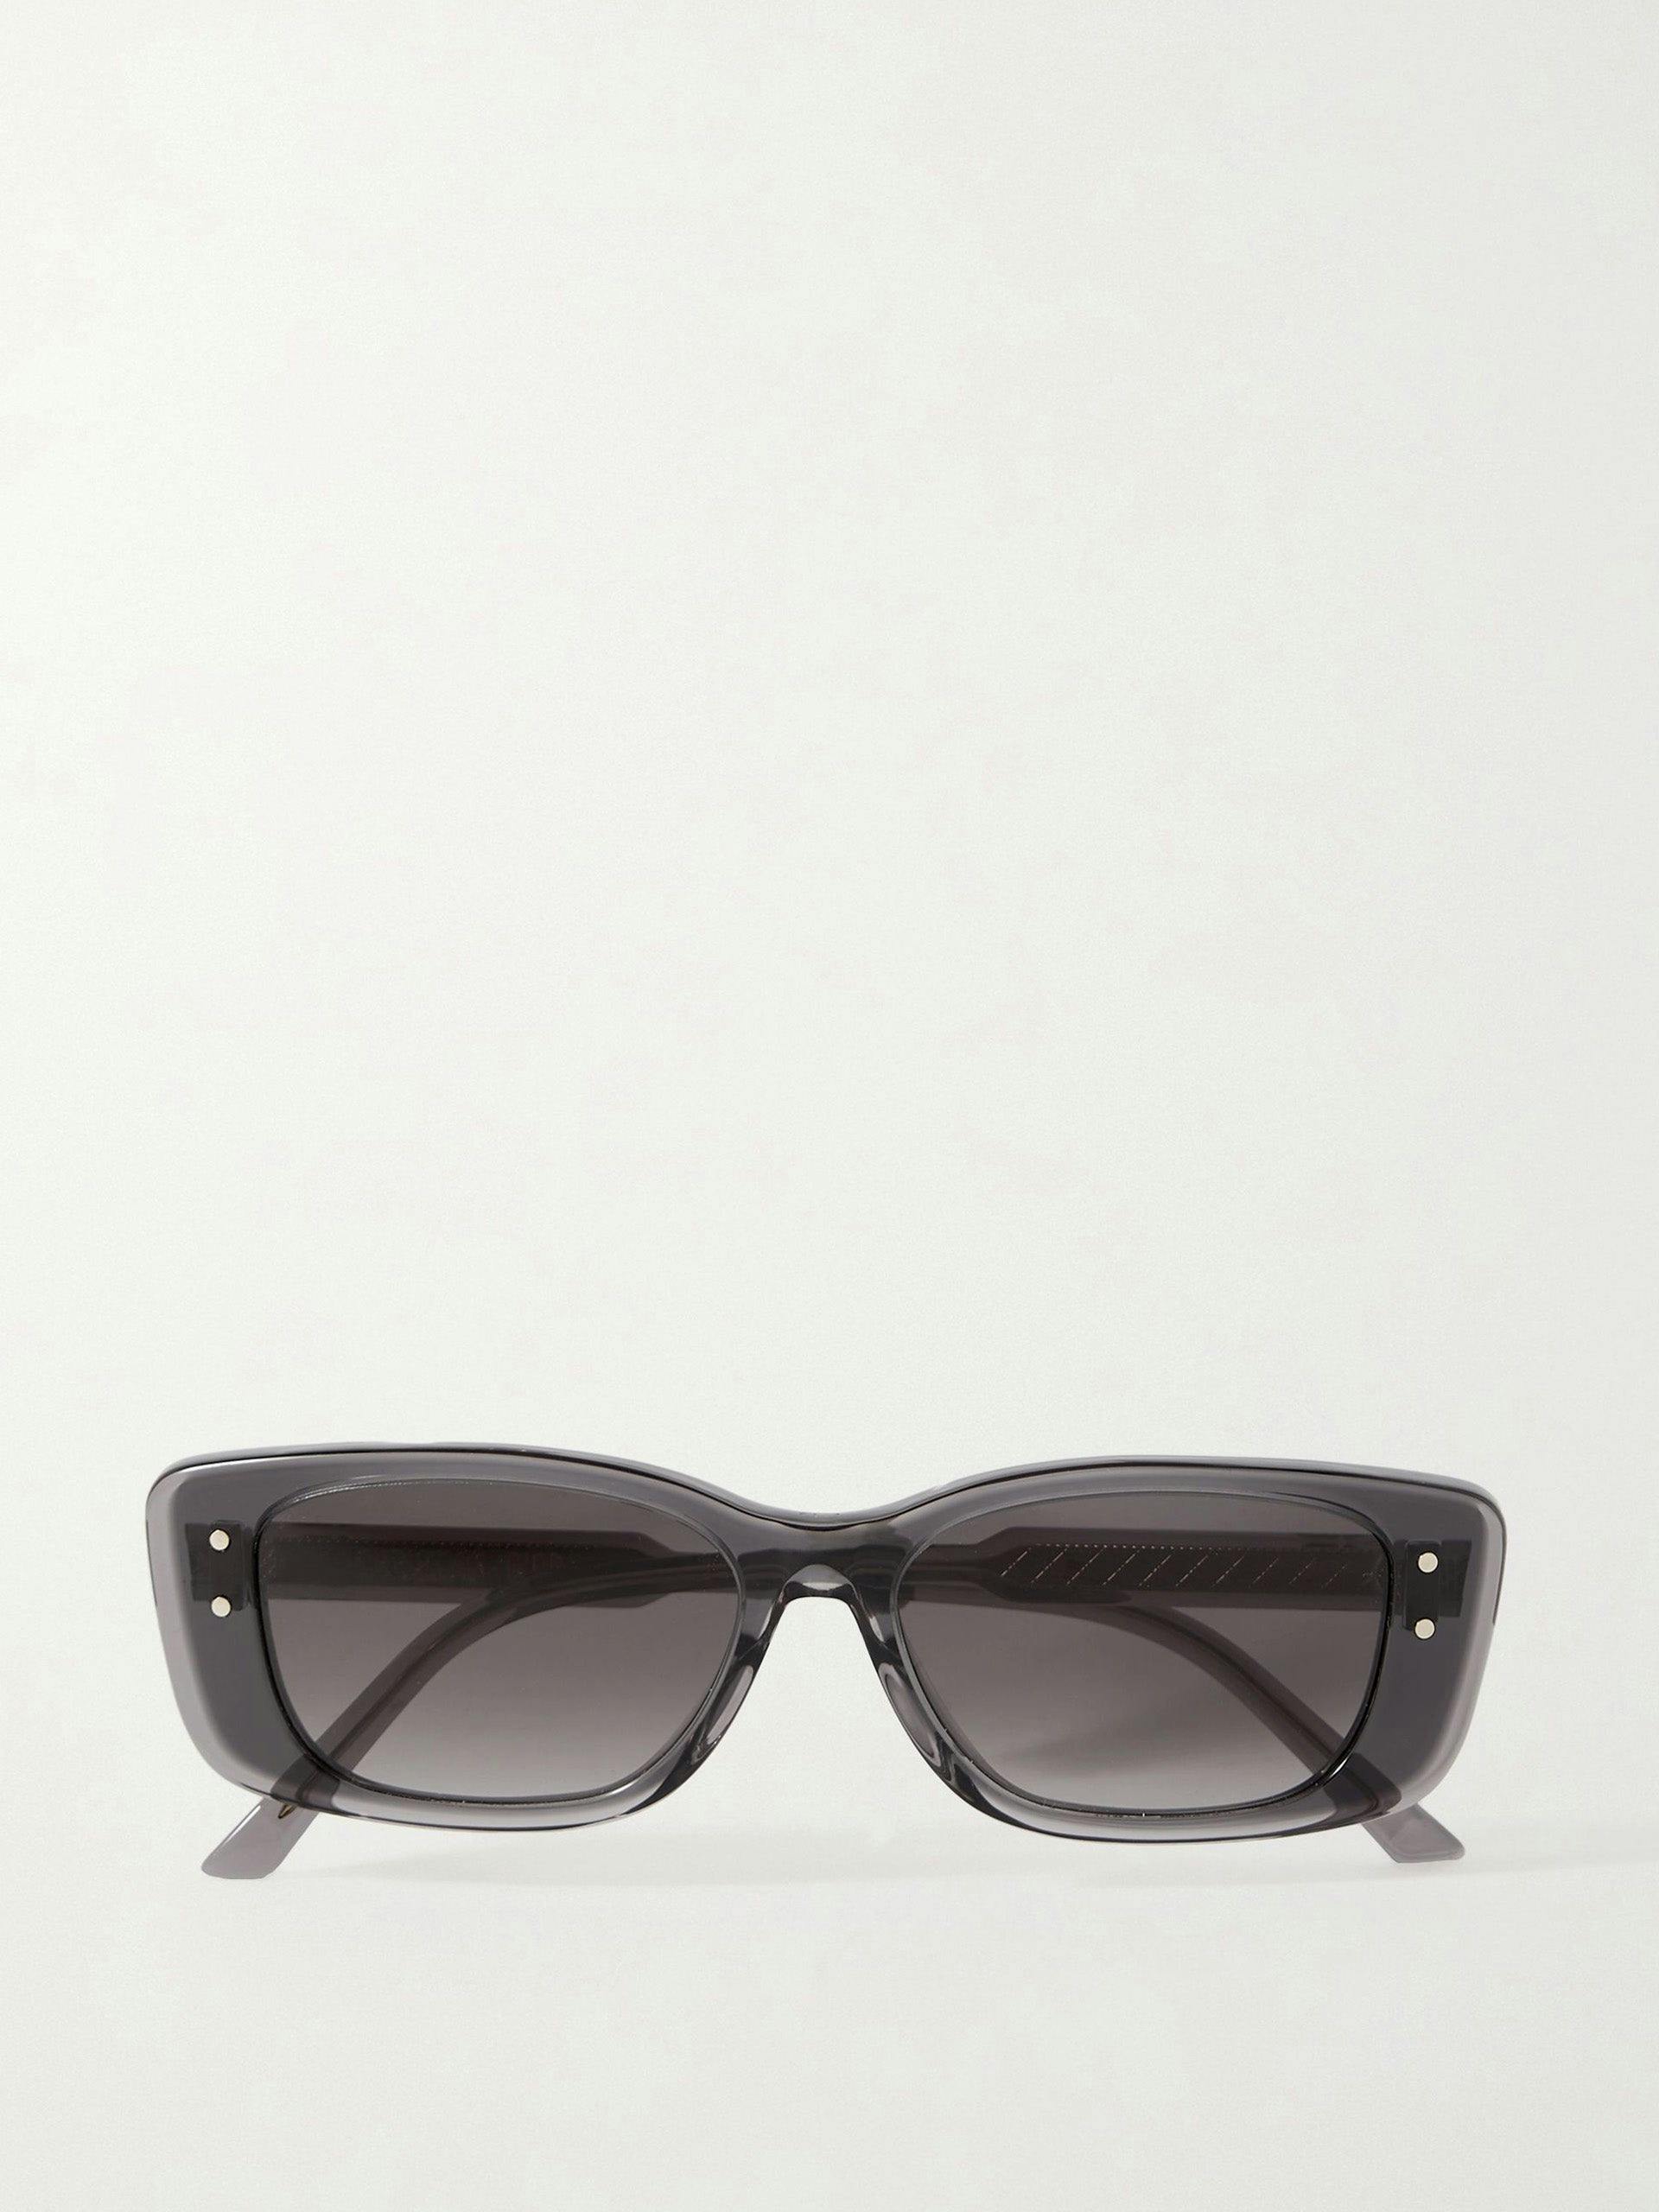 DiorHighlight S21 rectangular-frame acetate sunglasses